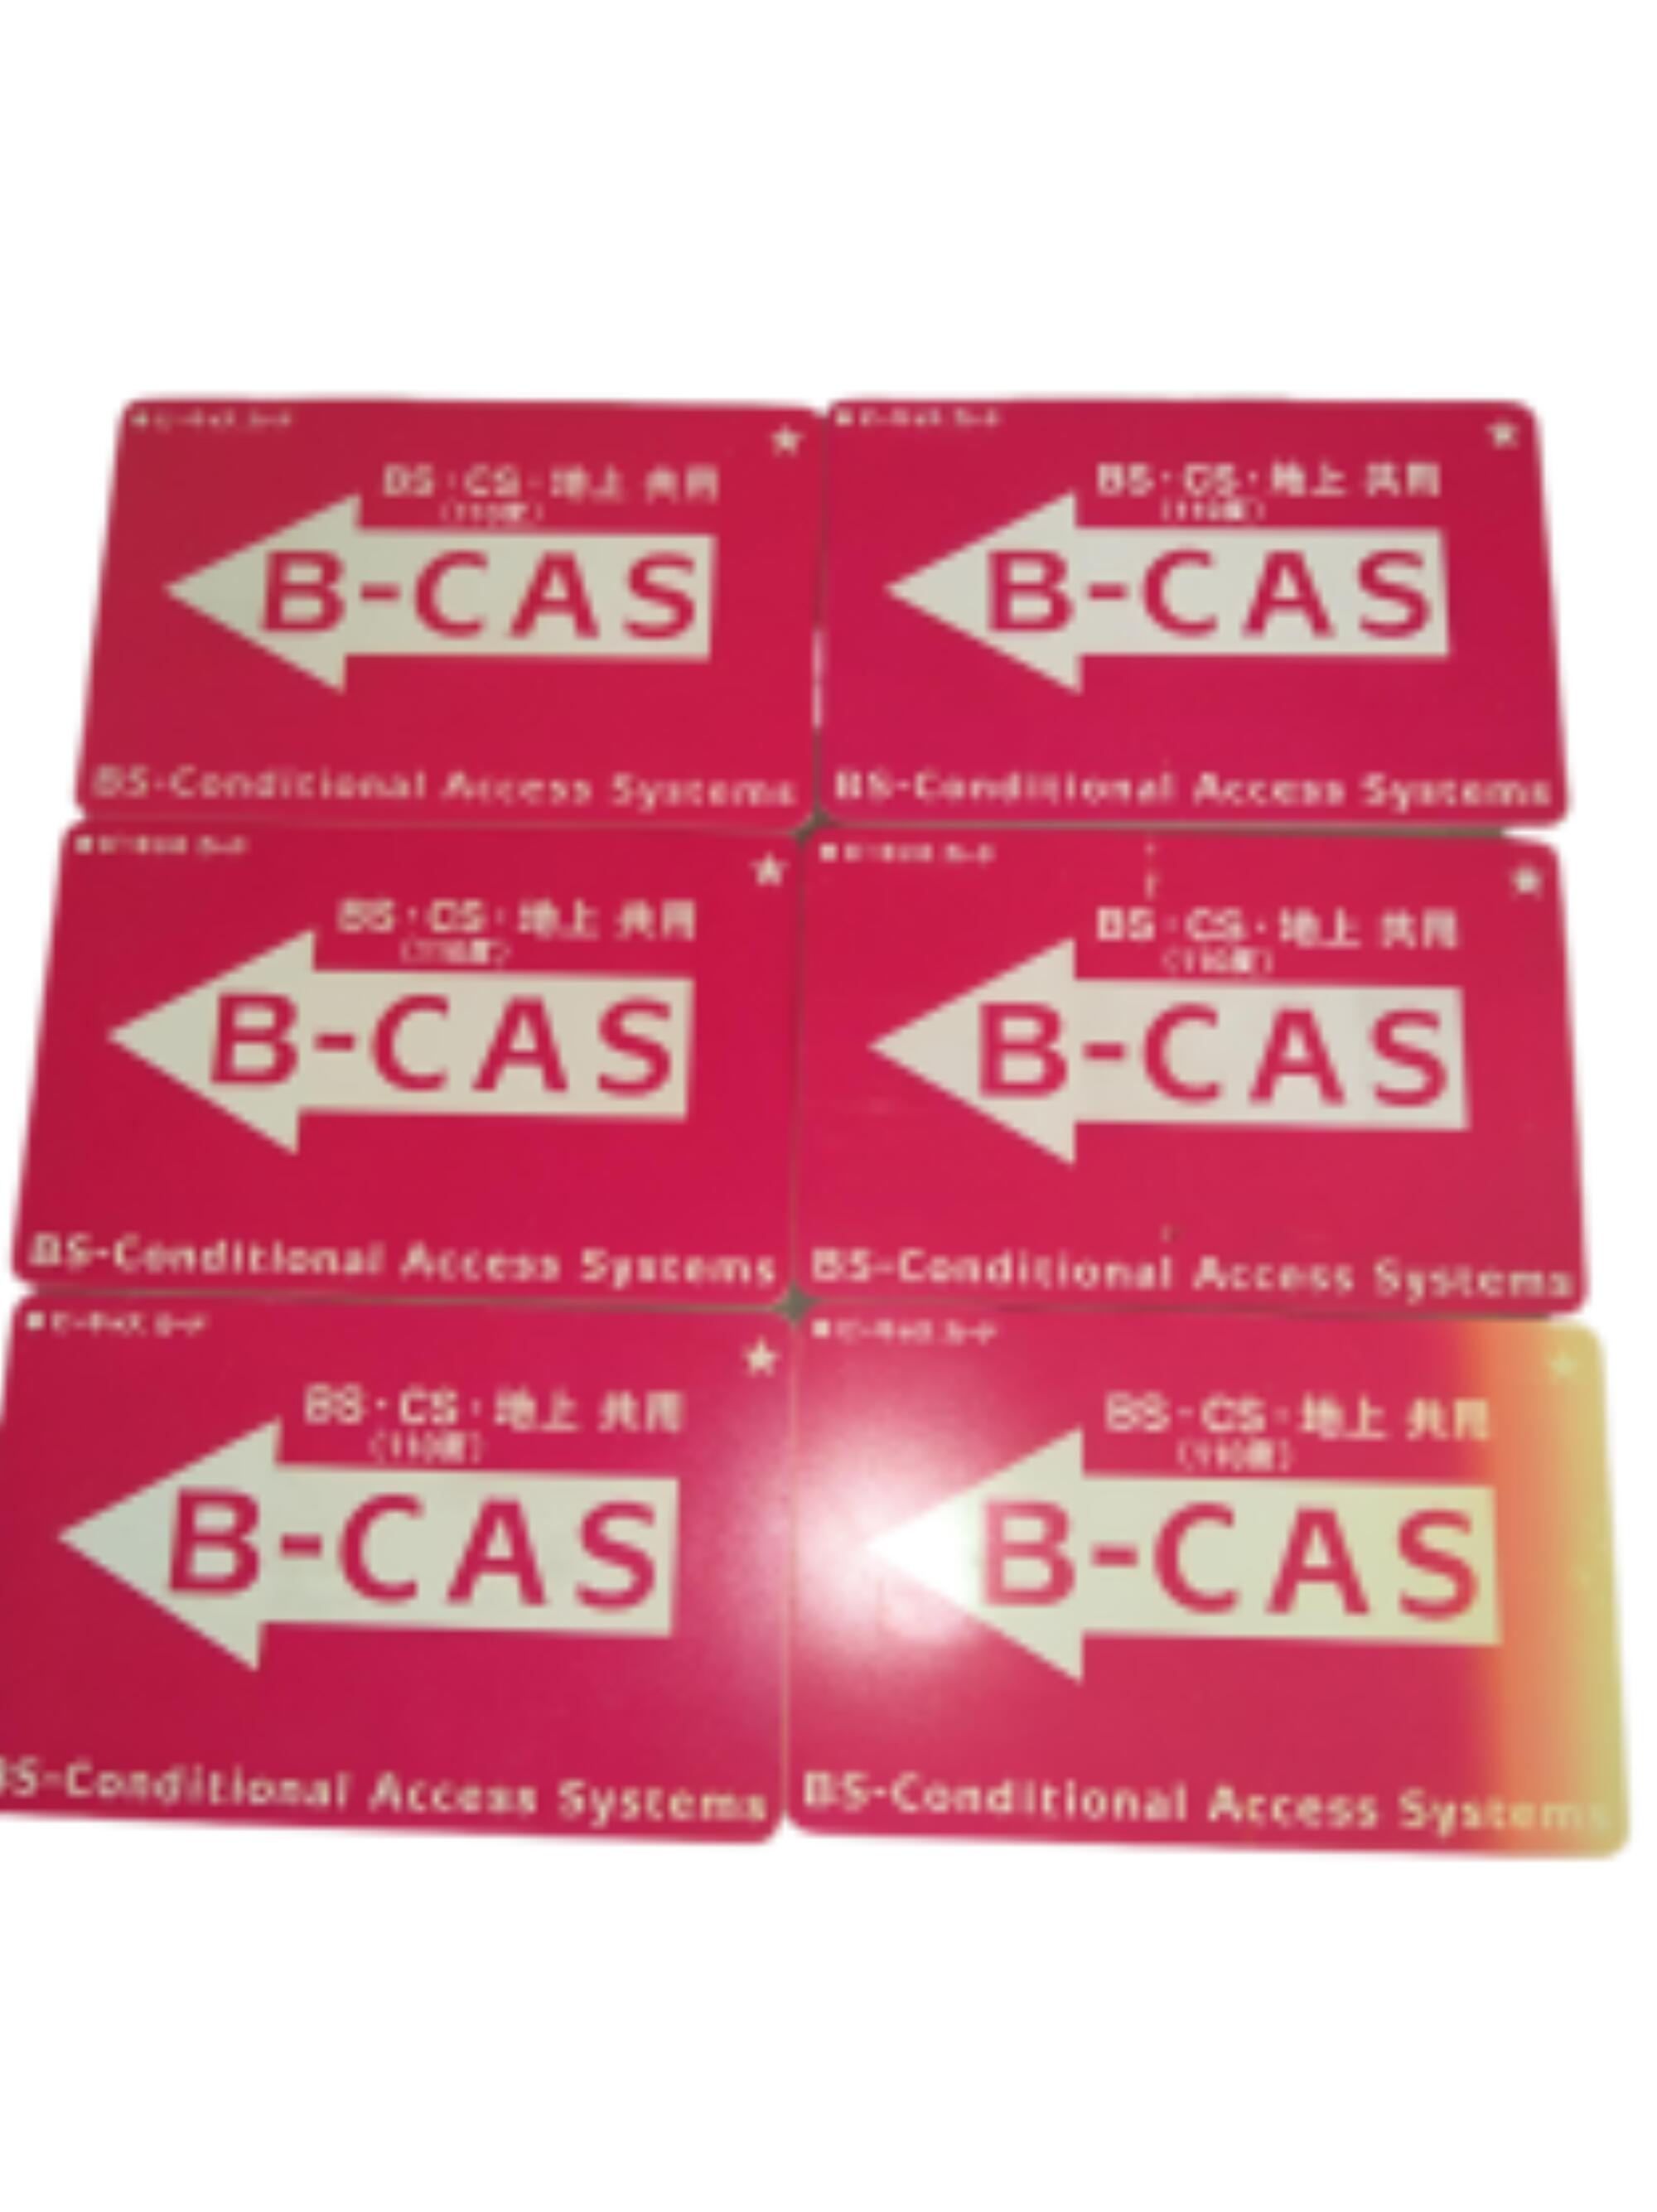 B-CASカード テレビカード チューナーカード 6枚セット 一組 中古品 M002 日焼けあり1枚 B-CAS b-casカード b-cas ビーキャス ビーキャスカード テレビ 受信 地デジ 地上デジタル BS CS bs cs BSテレビ b cas bcas チュナー カード のみ まとめ買い